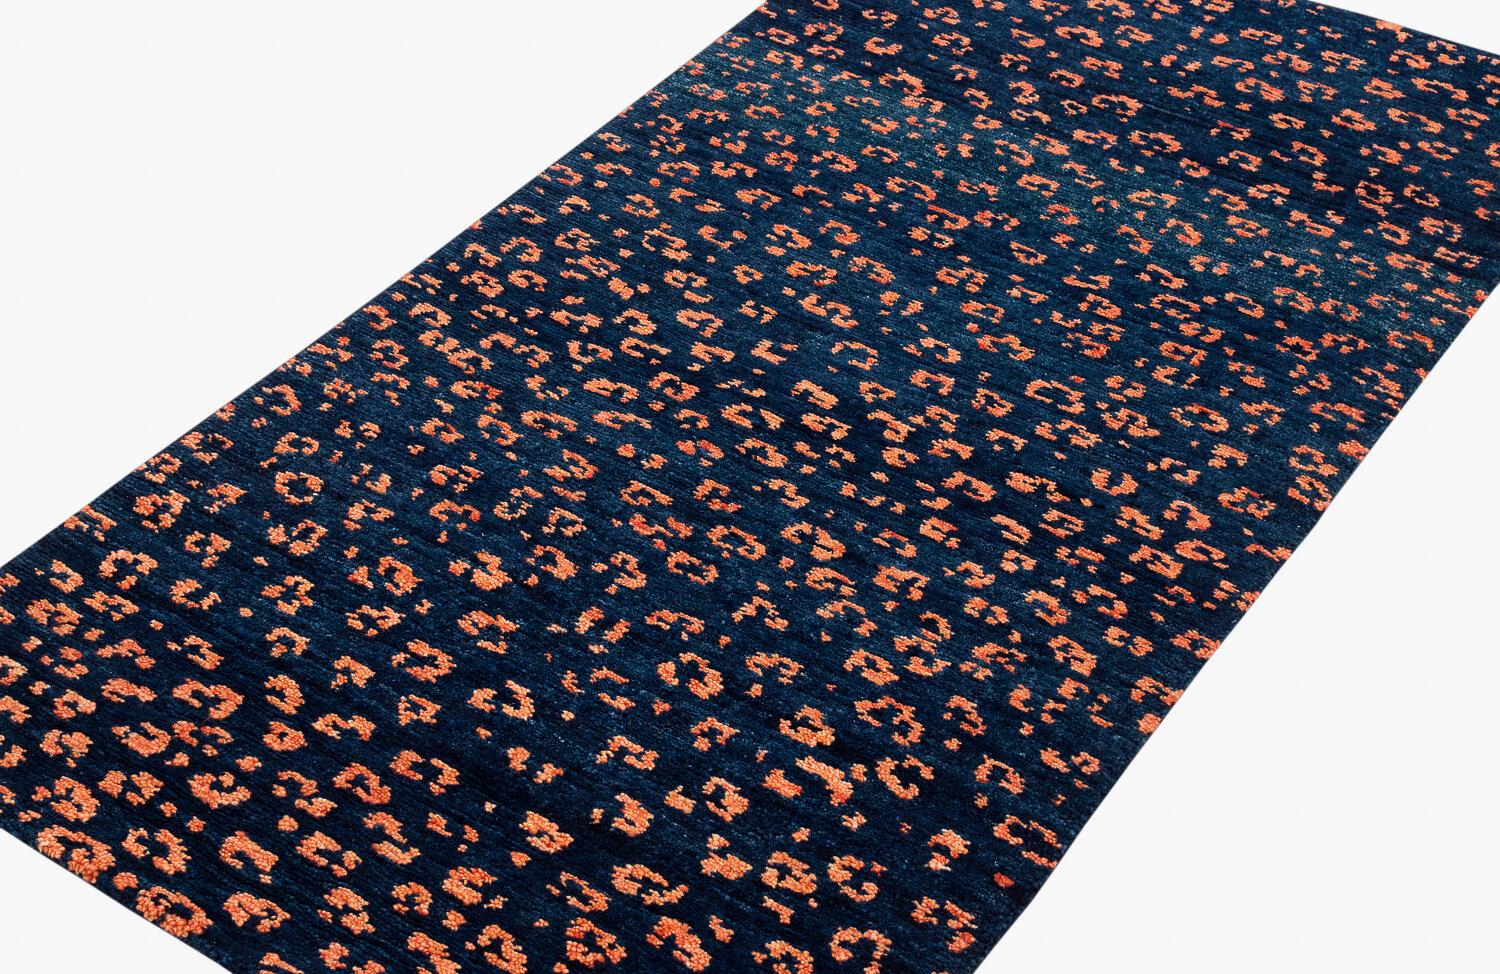 Ein tiefes Indigo kontrastiert mit den orangefarbenen Flecken in diesem Leopardenmuster. Joseph Carini ließ sich von den Markierungen eines der majestätischsten und schwer fassbaren Wildtiere inspirieren und webte es aus handgesponnener